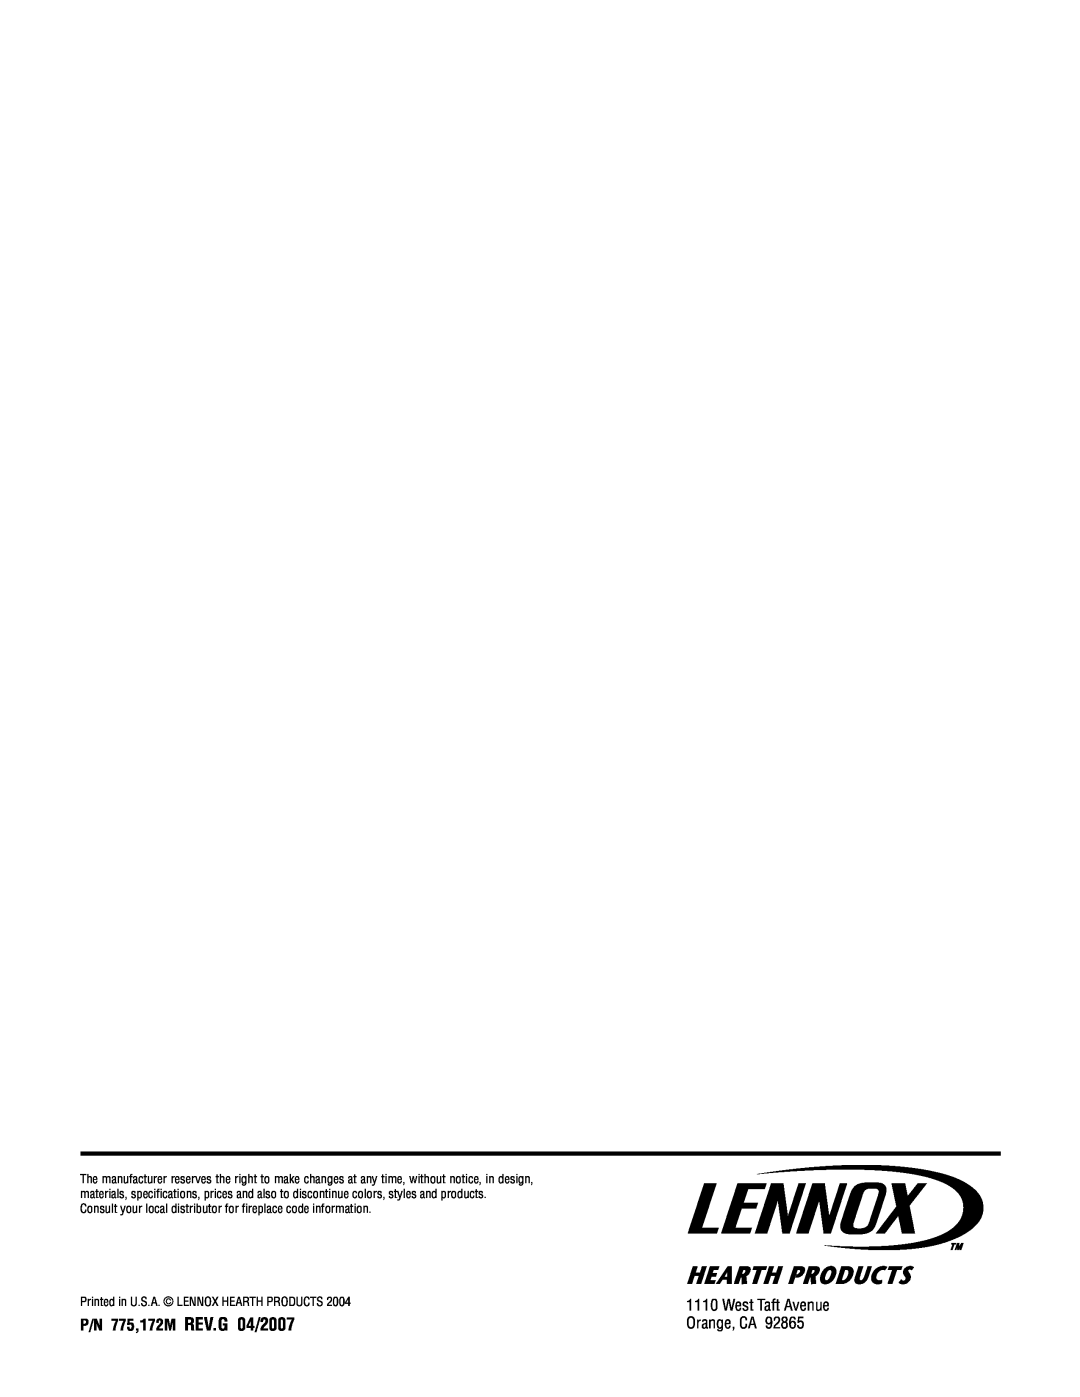 Lennox Hearth MPE-36R warranty P/N 775,172M REV.G 04/2007, West Taft Avenue Orange, CA 